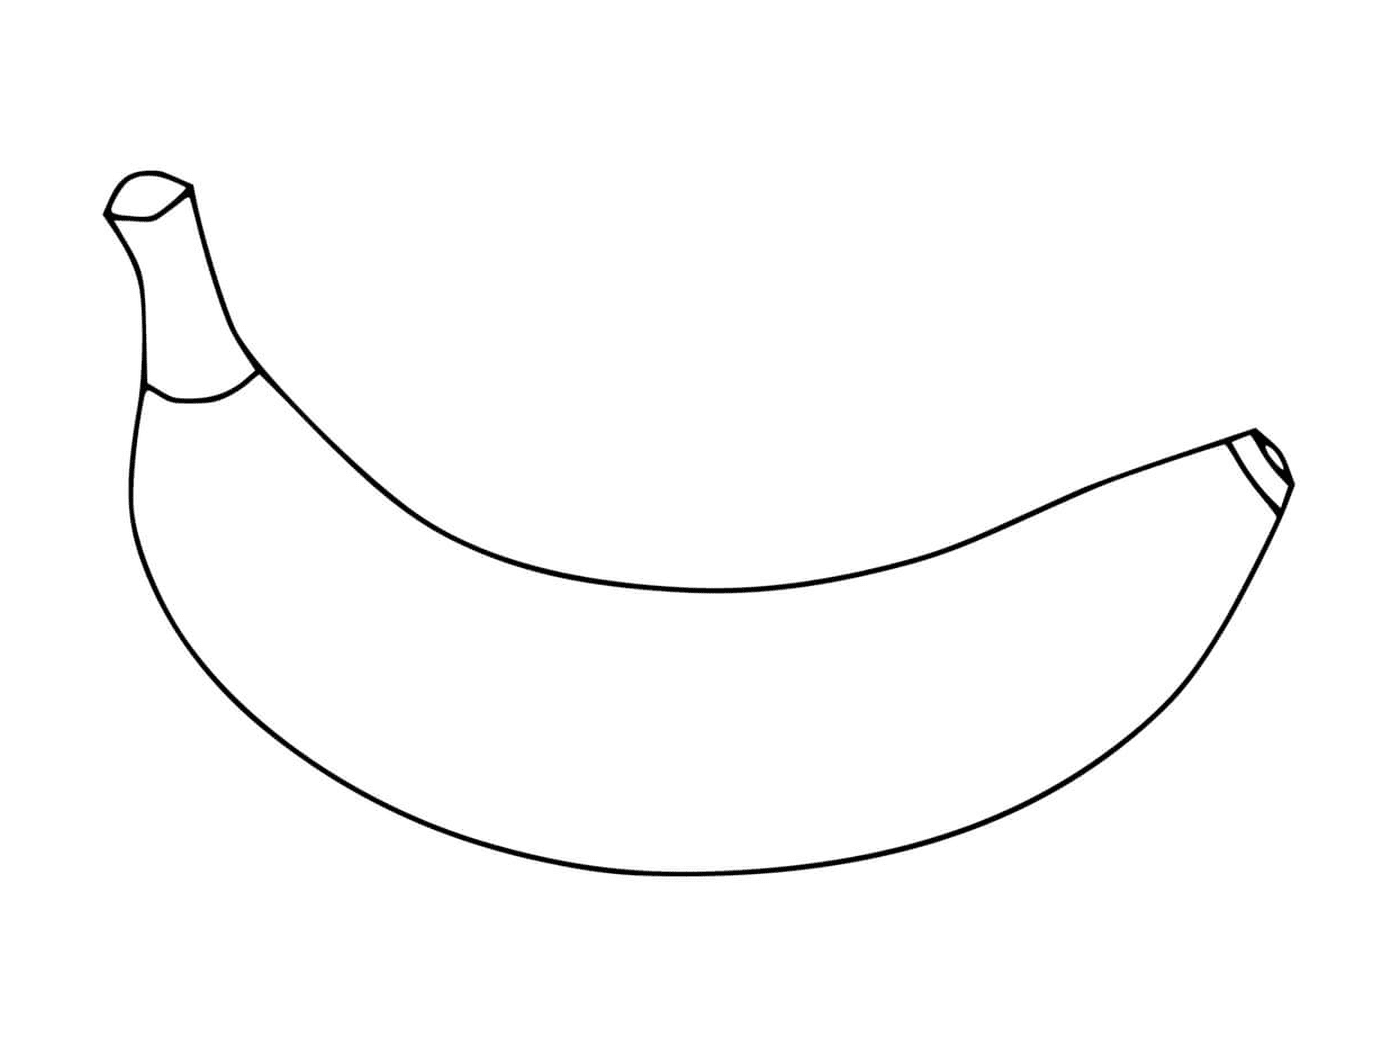  Uma foto de uma banana 